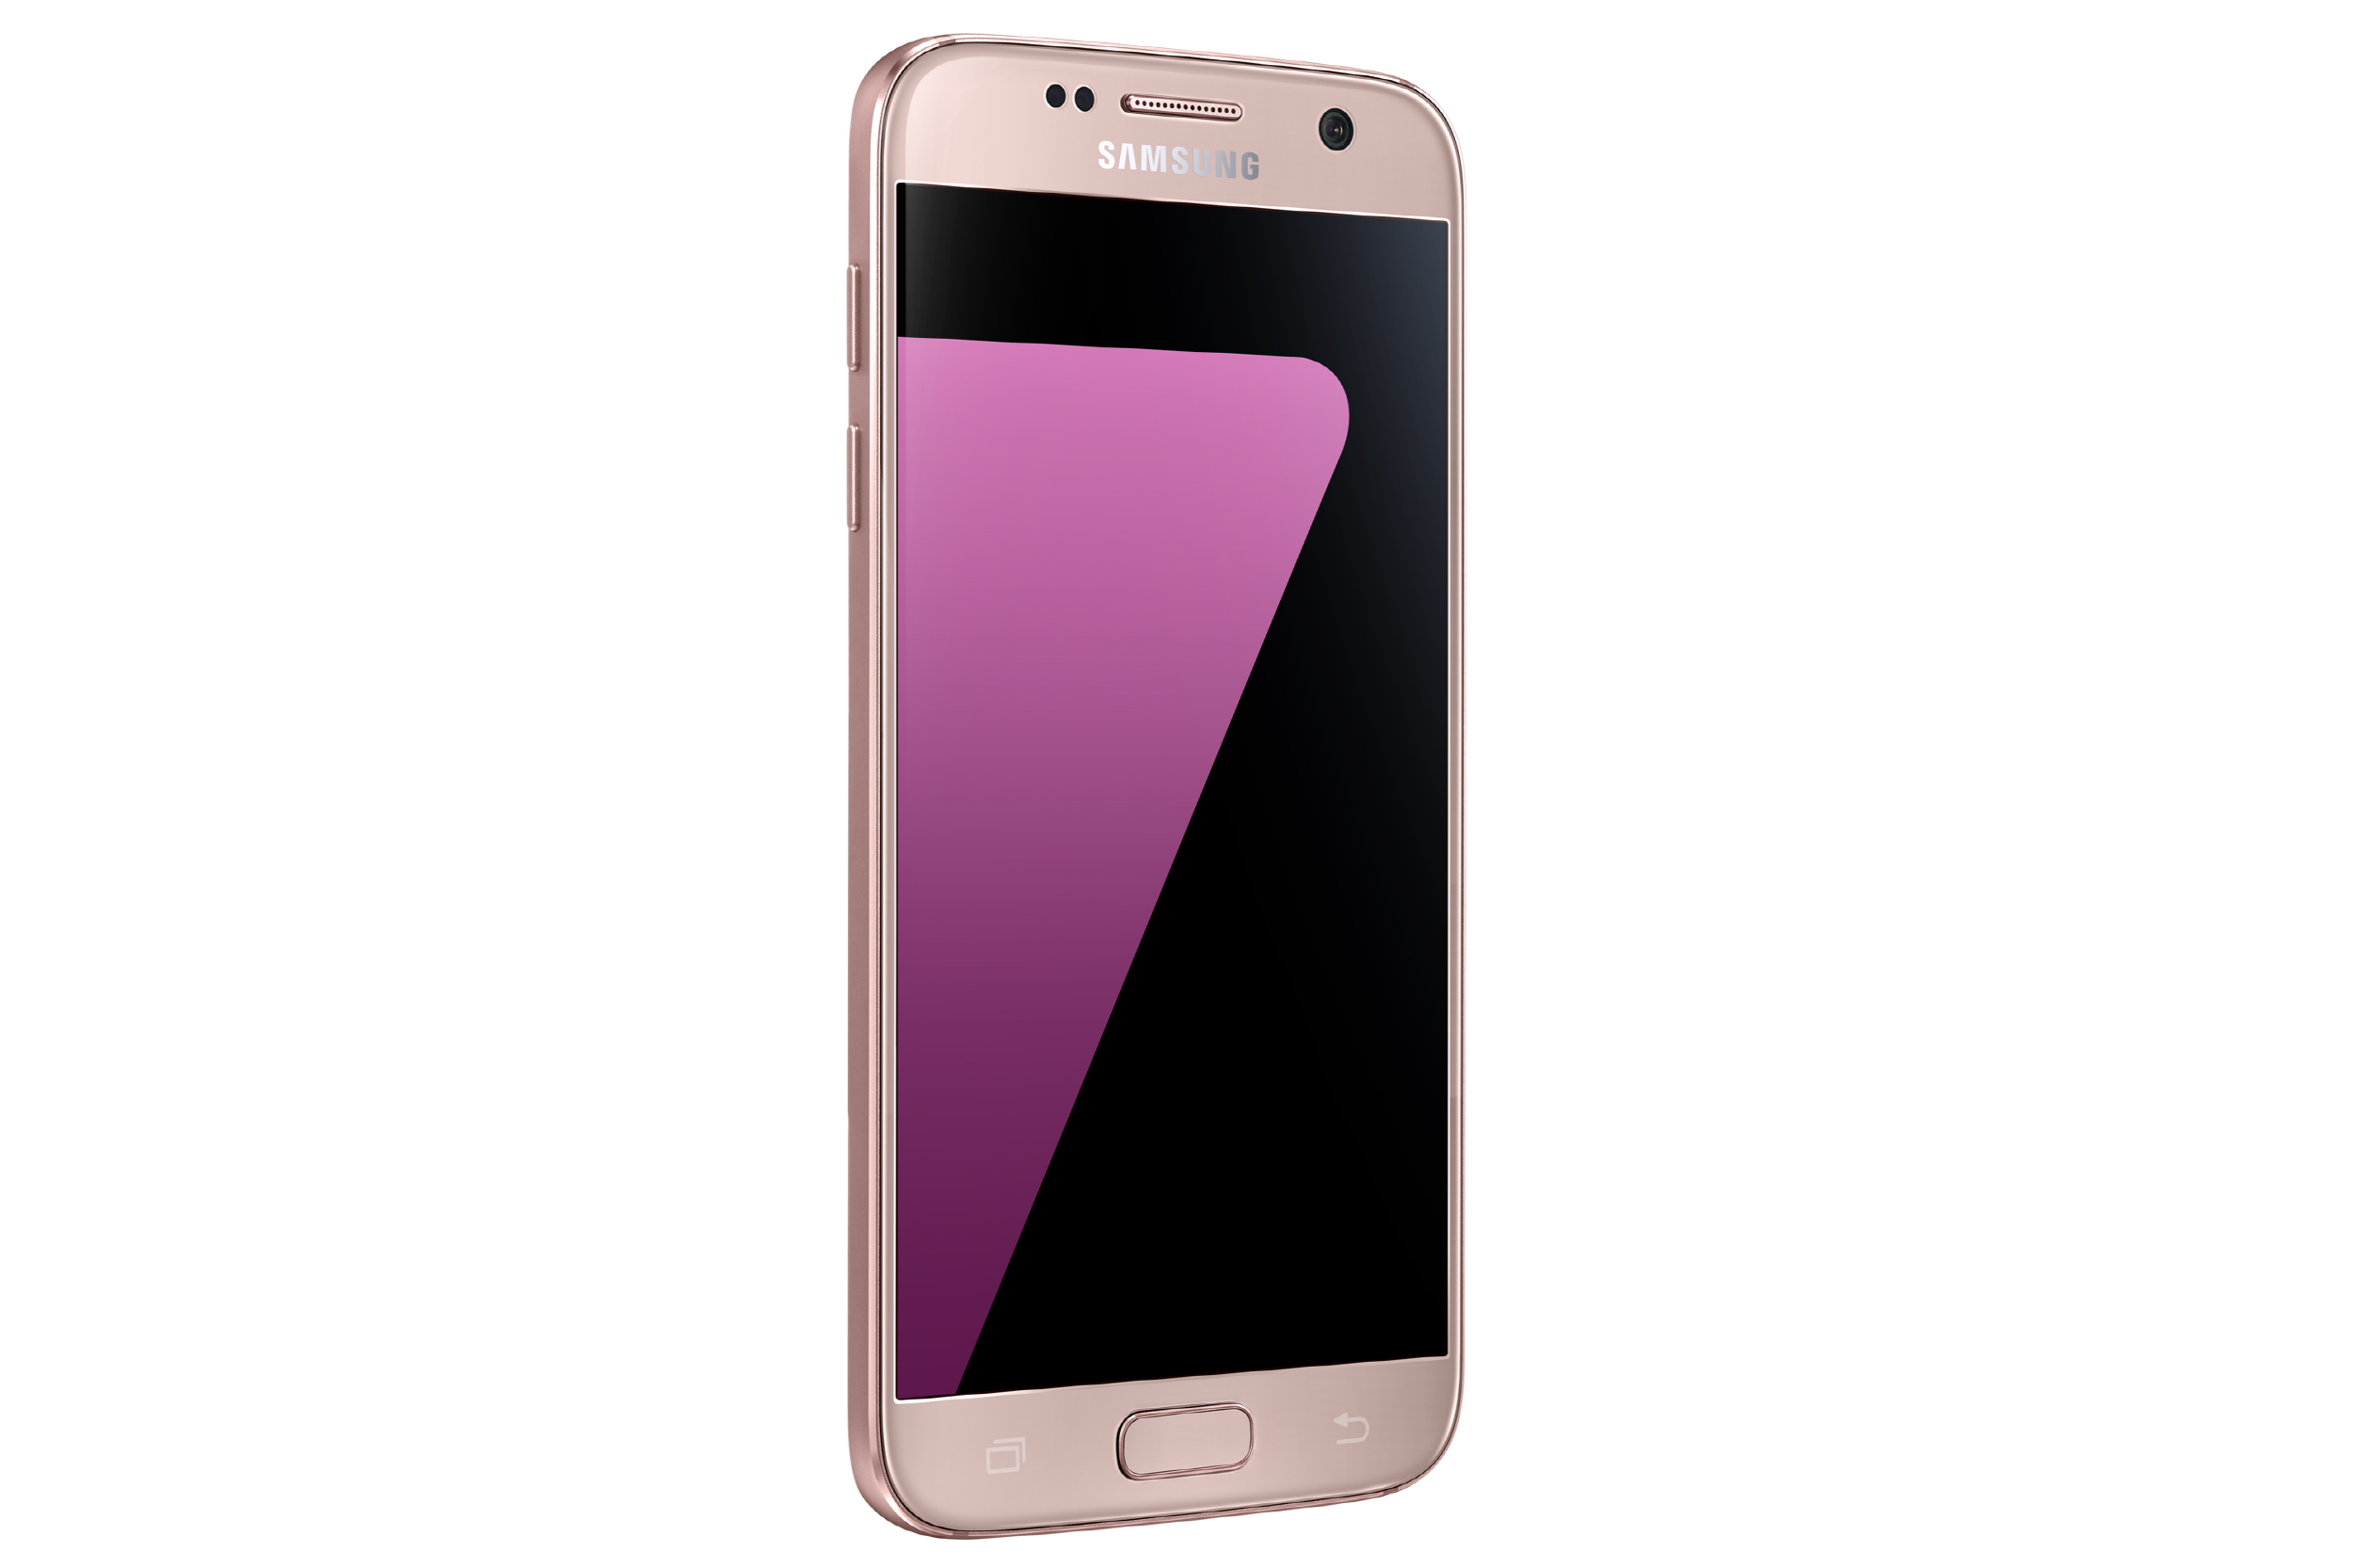 leg uit Ademen Wijzigingen van Galaxy S7 and S7 edge Now Available in Pink Gold - Samsung Newsroom Global  Media Library